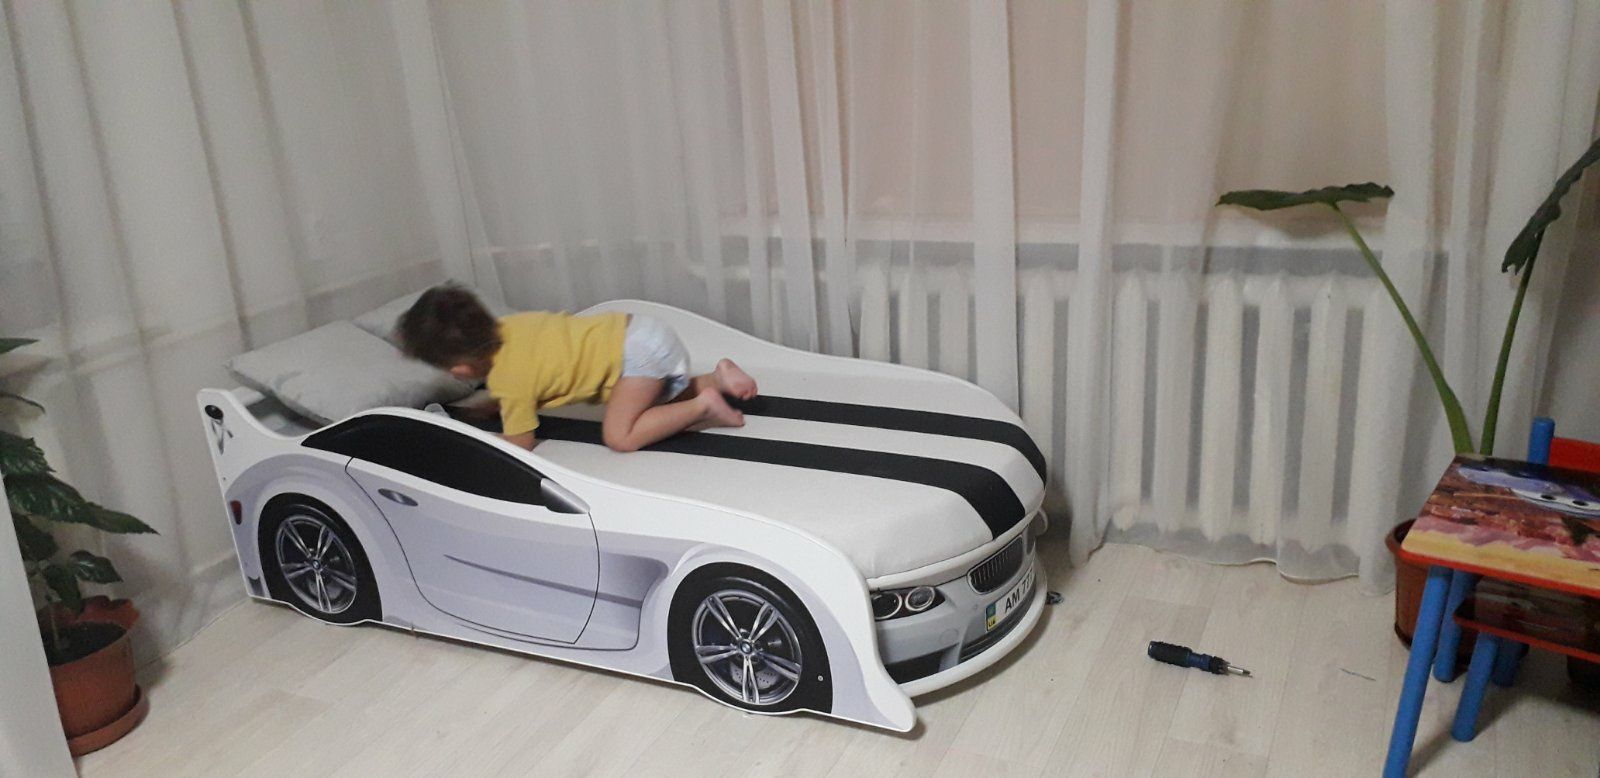 Удобная кровать диван машина,машинка Бесплатная доставка по Украине!